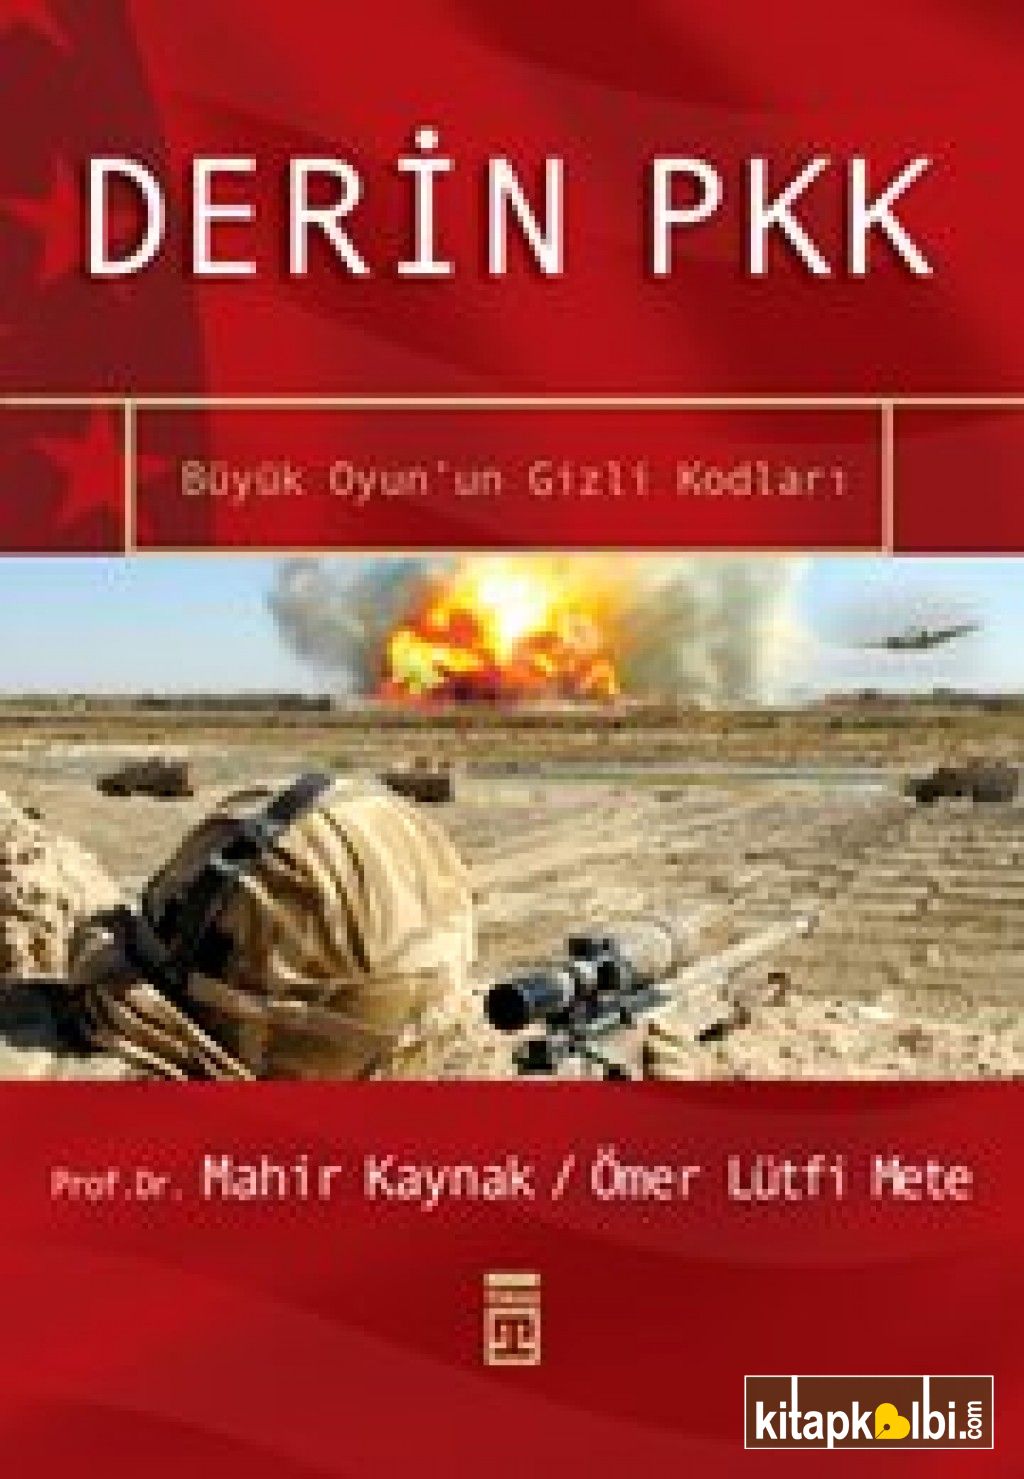 Derin PKK